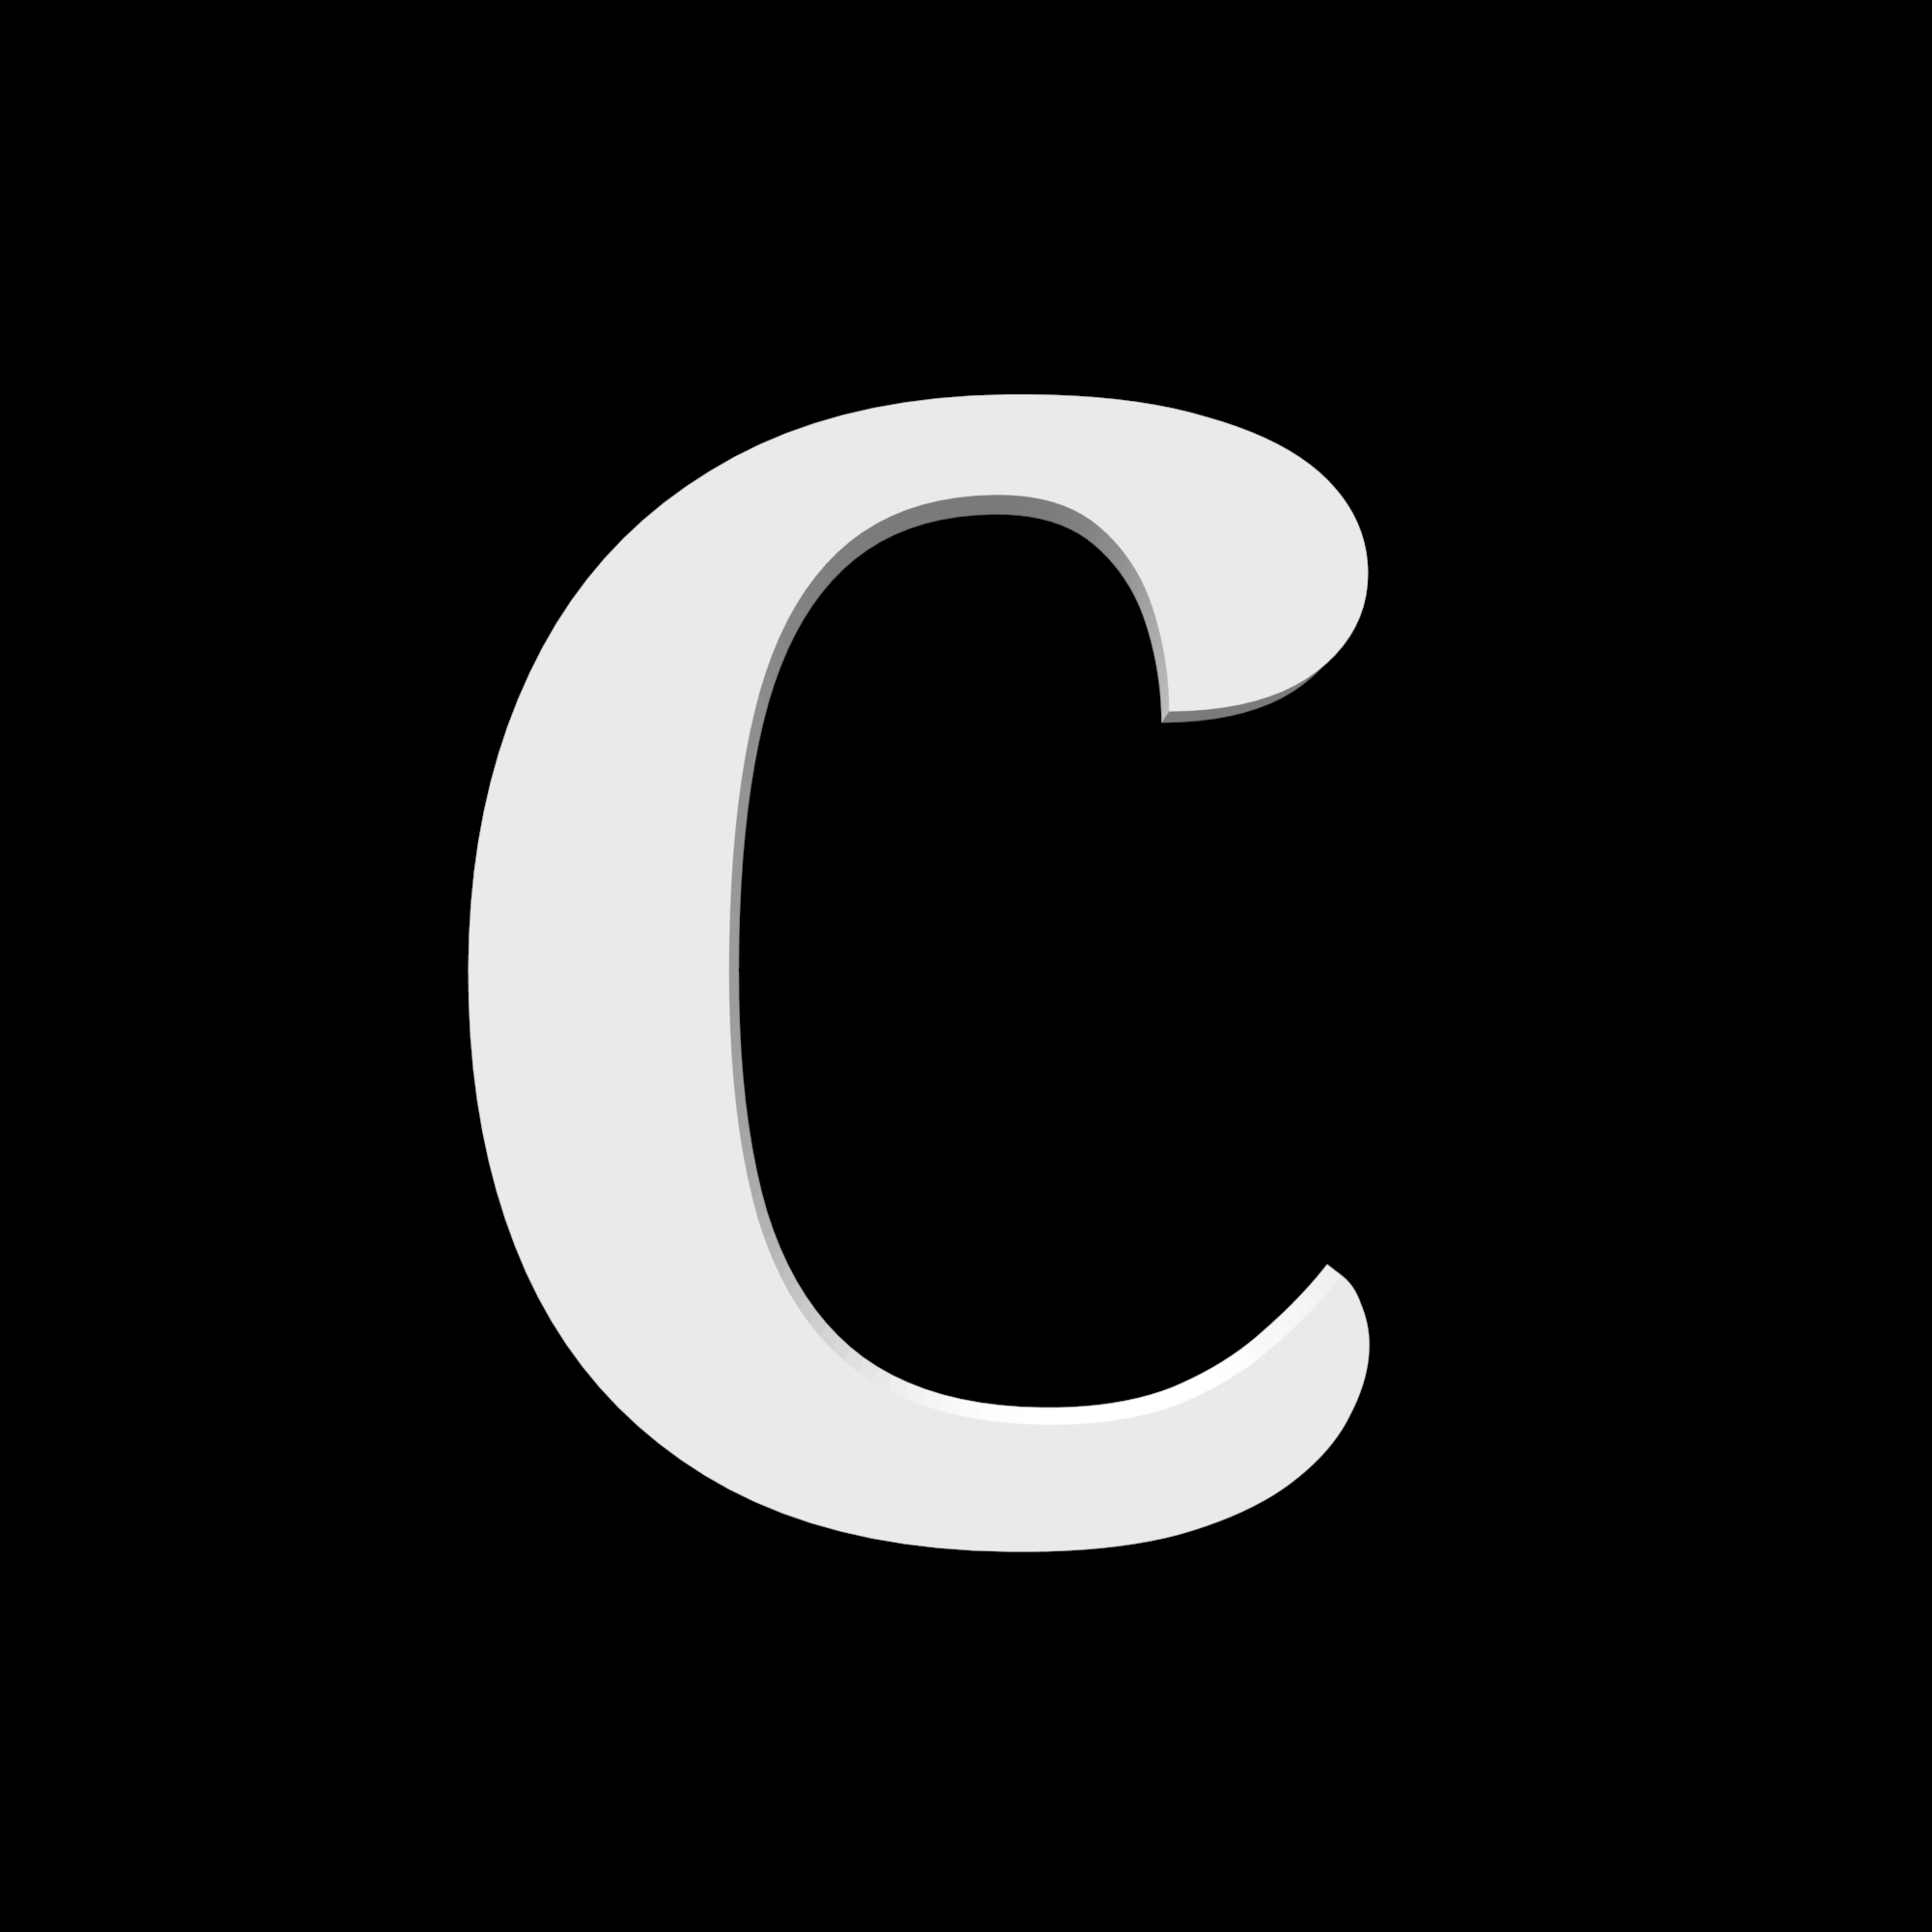 Hausbuchstabe C – Noto Serif – 170 mm hoch – 10 mm tief